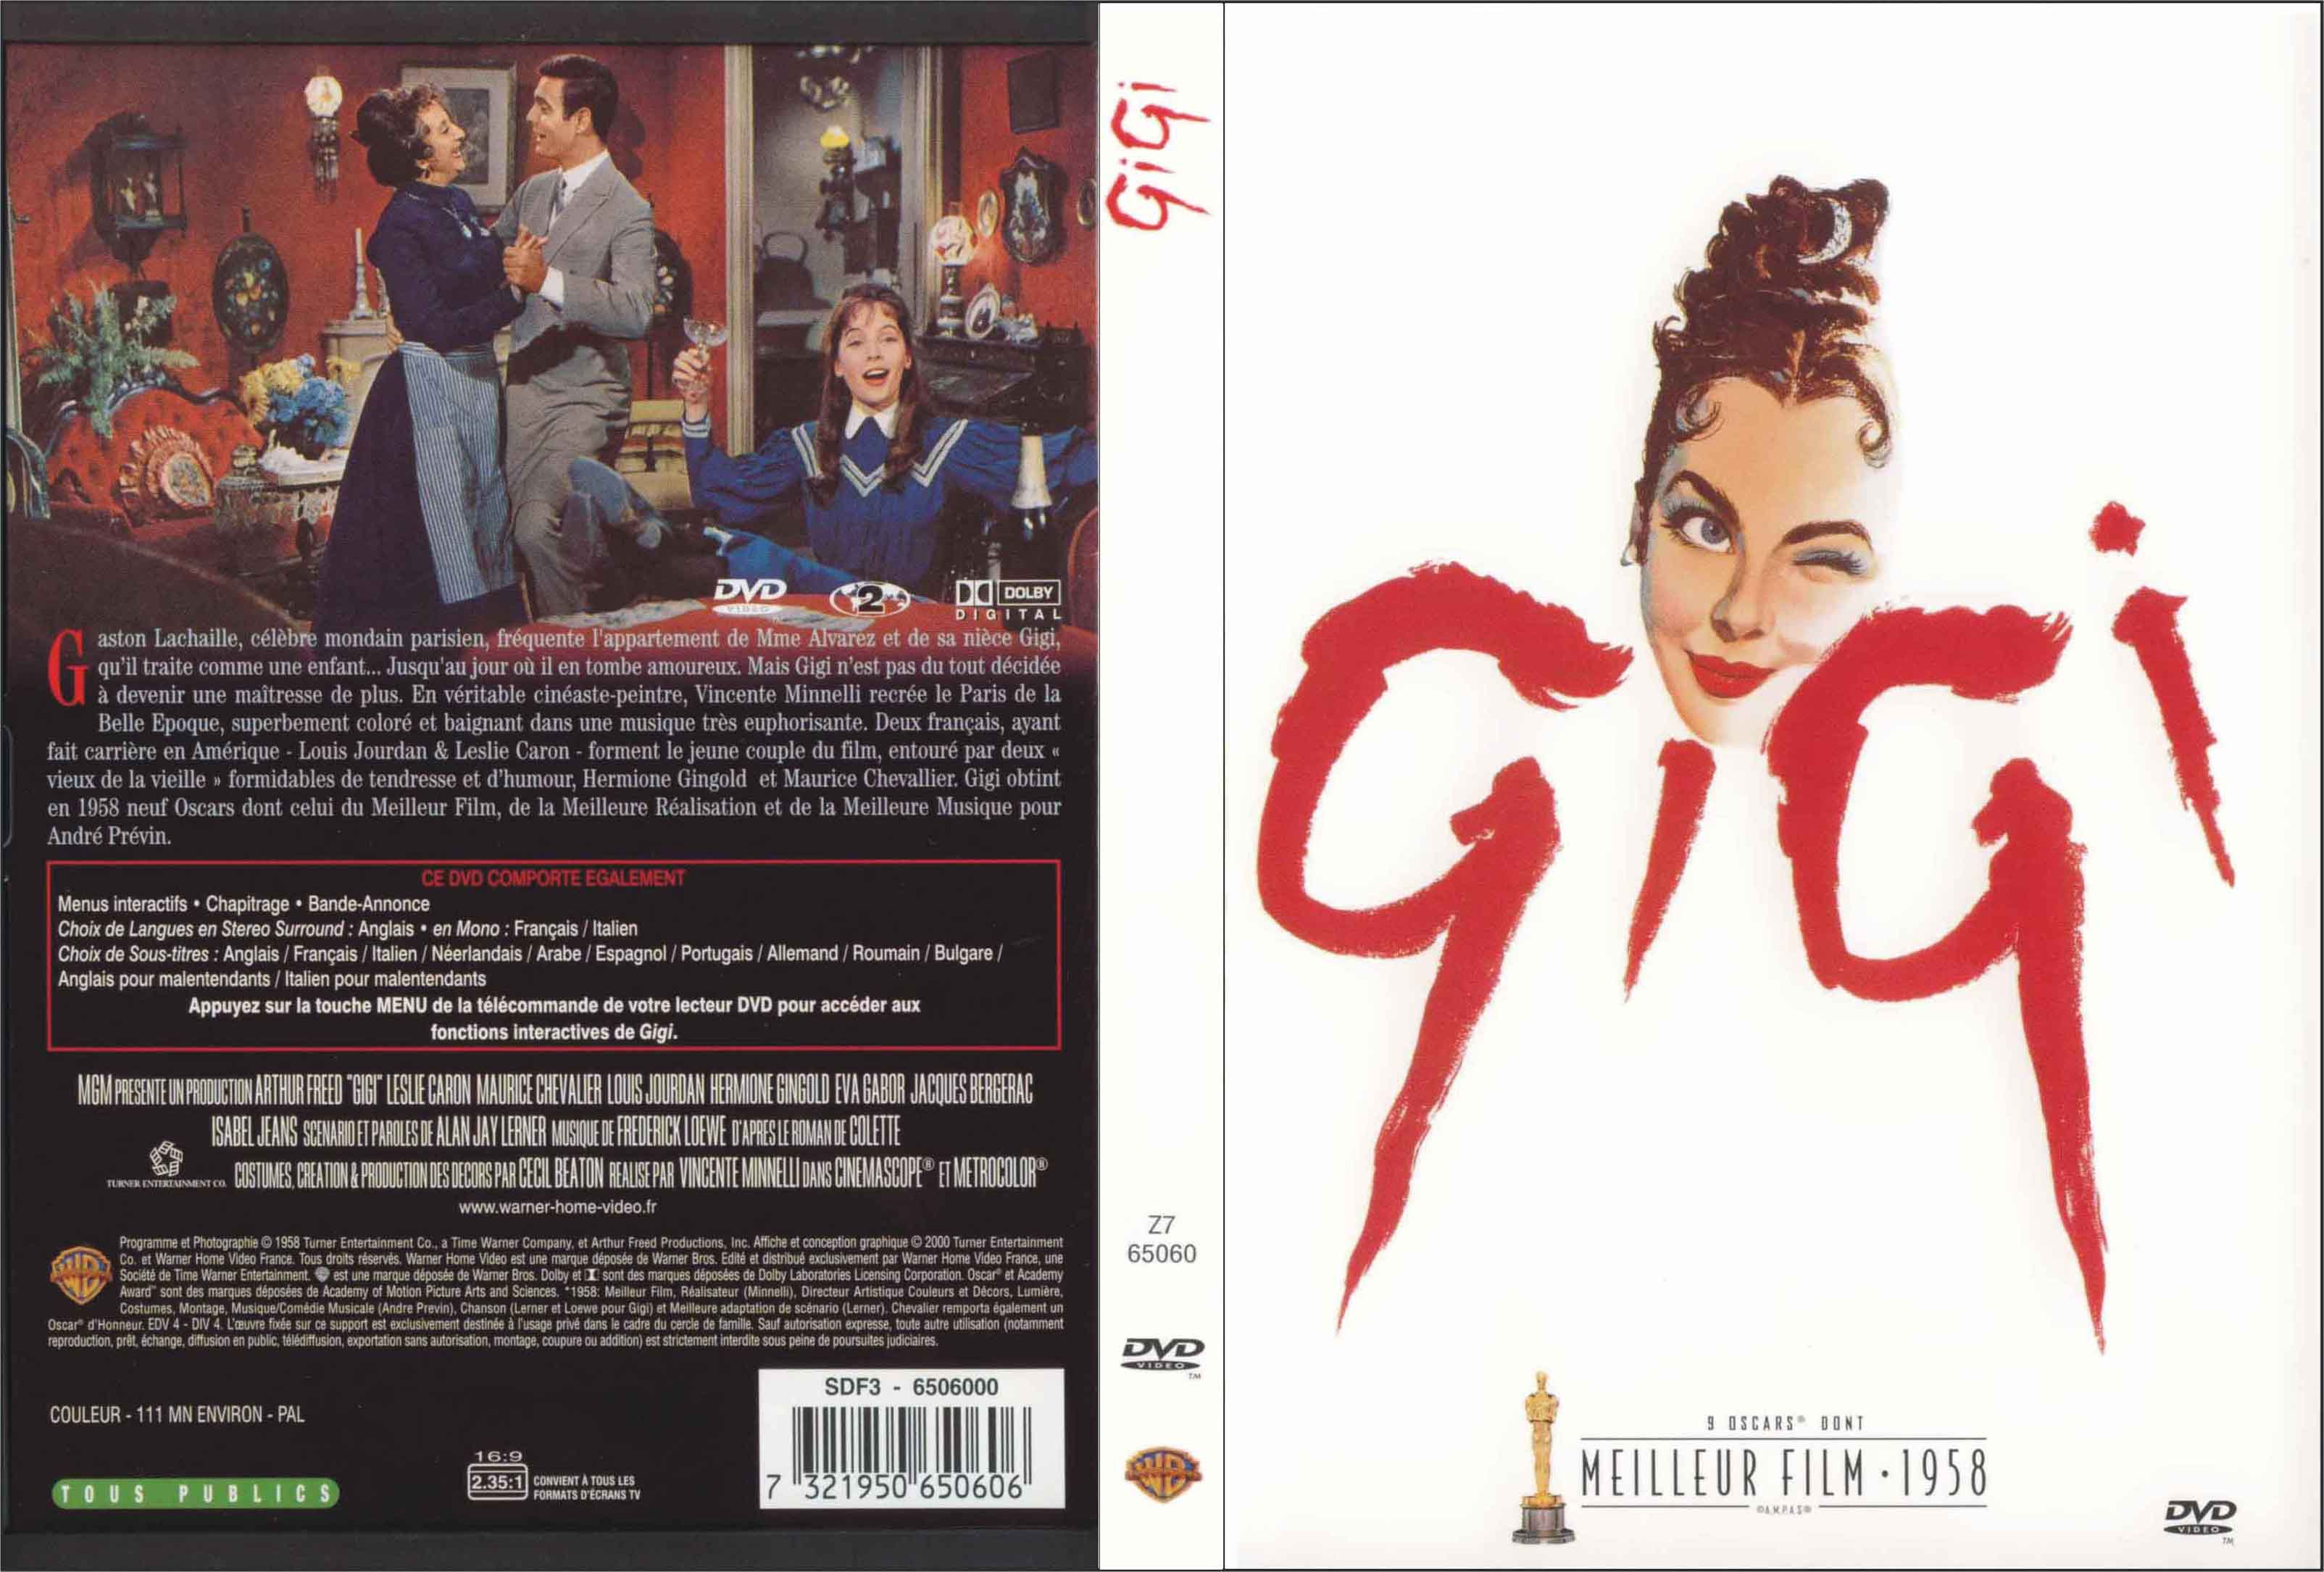 Jaquette DVD Gigi